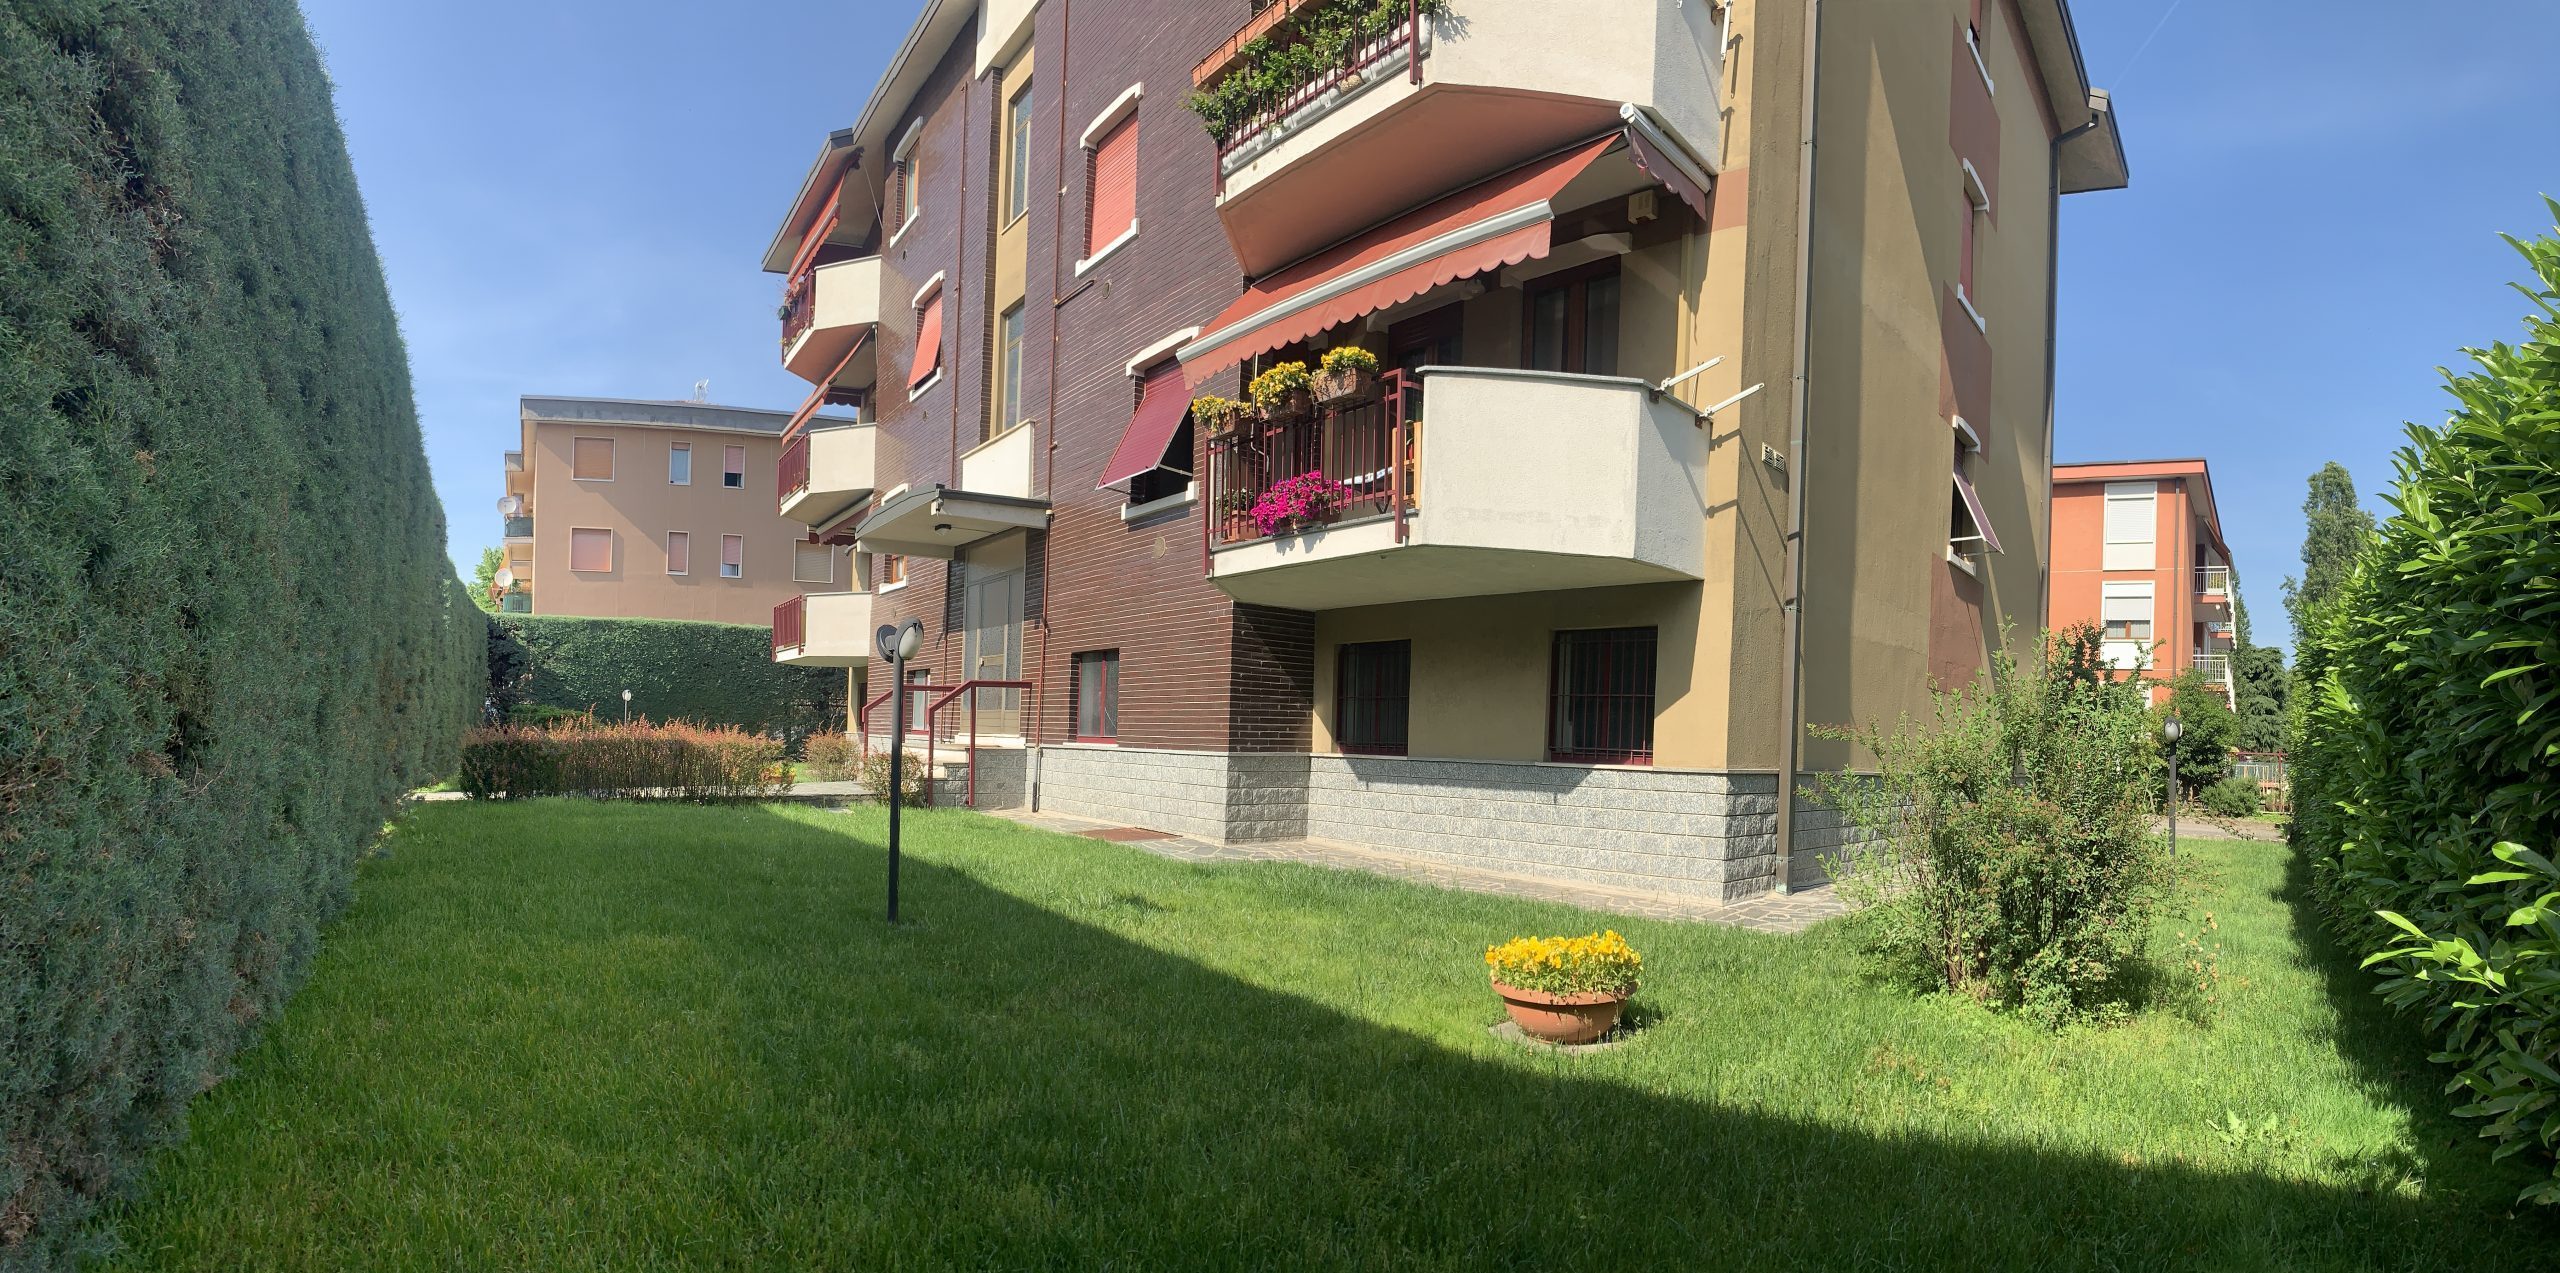 trilocale relax novate milanese classhome giardino condominiale